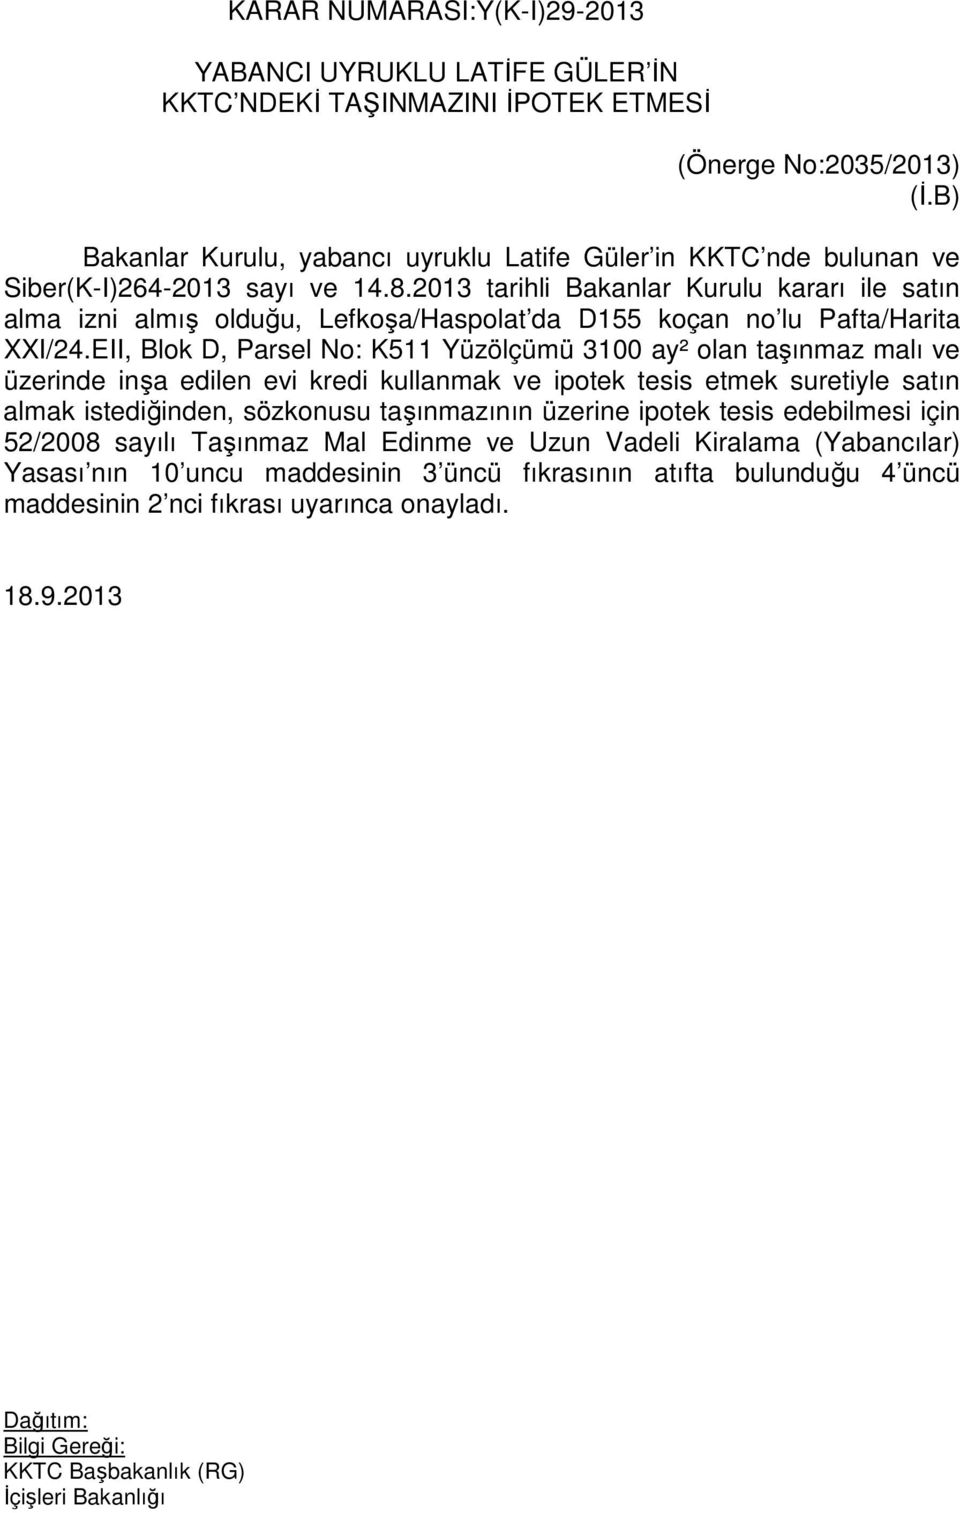 2013 tarihli Bakanlar Kurulu kararı ile satın alma izni almış olduğu, Lefkoşa/Haspolat da D155 koçan no lu Pafta/Harita XXI/24.